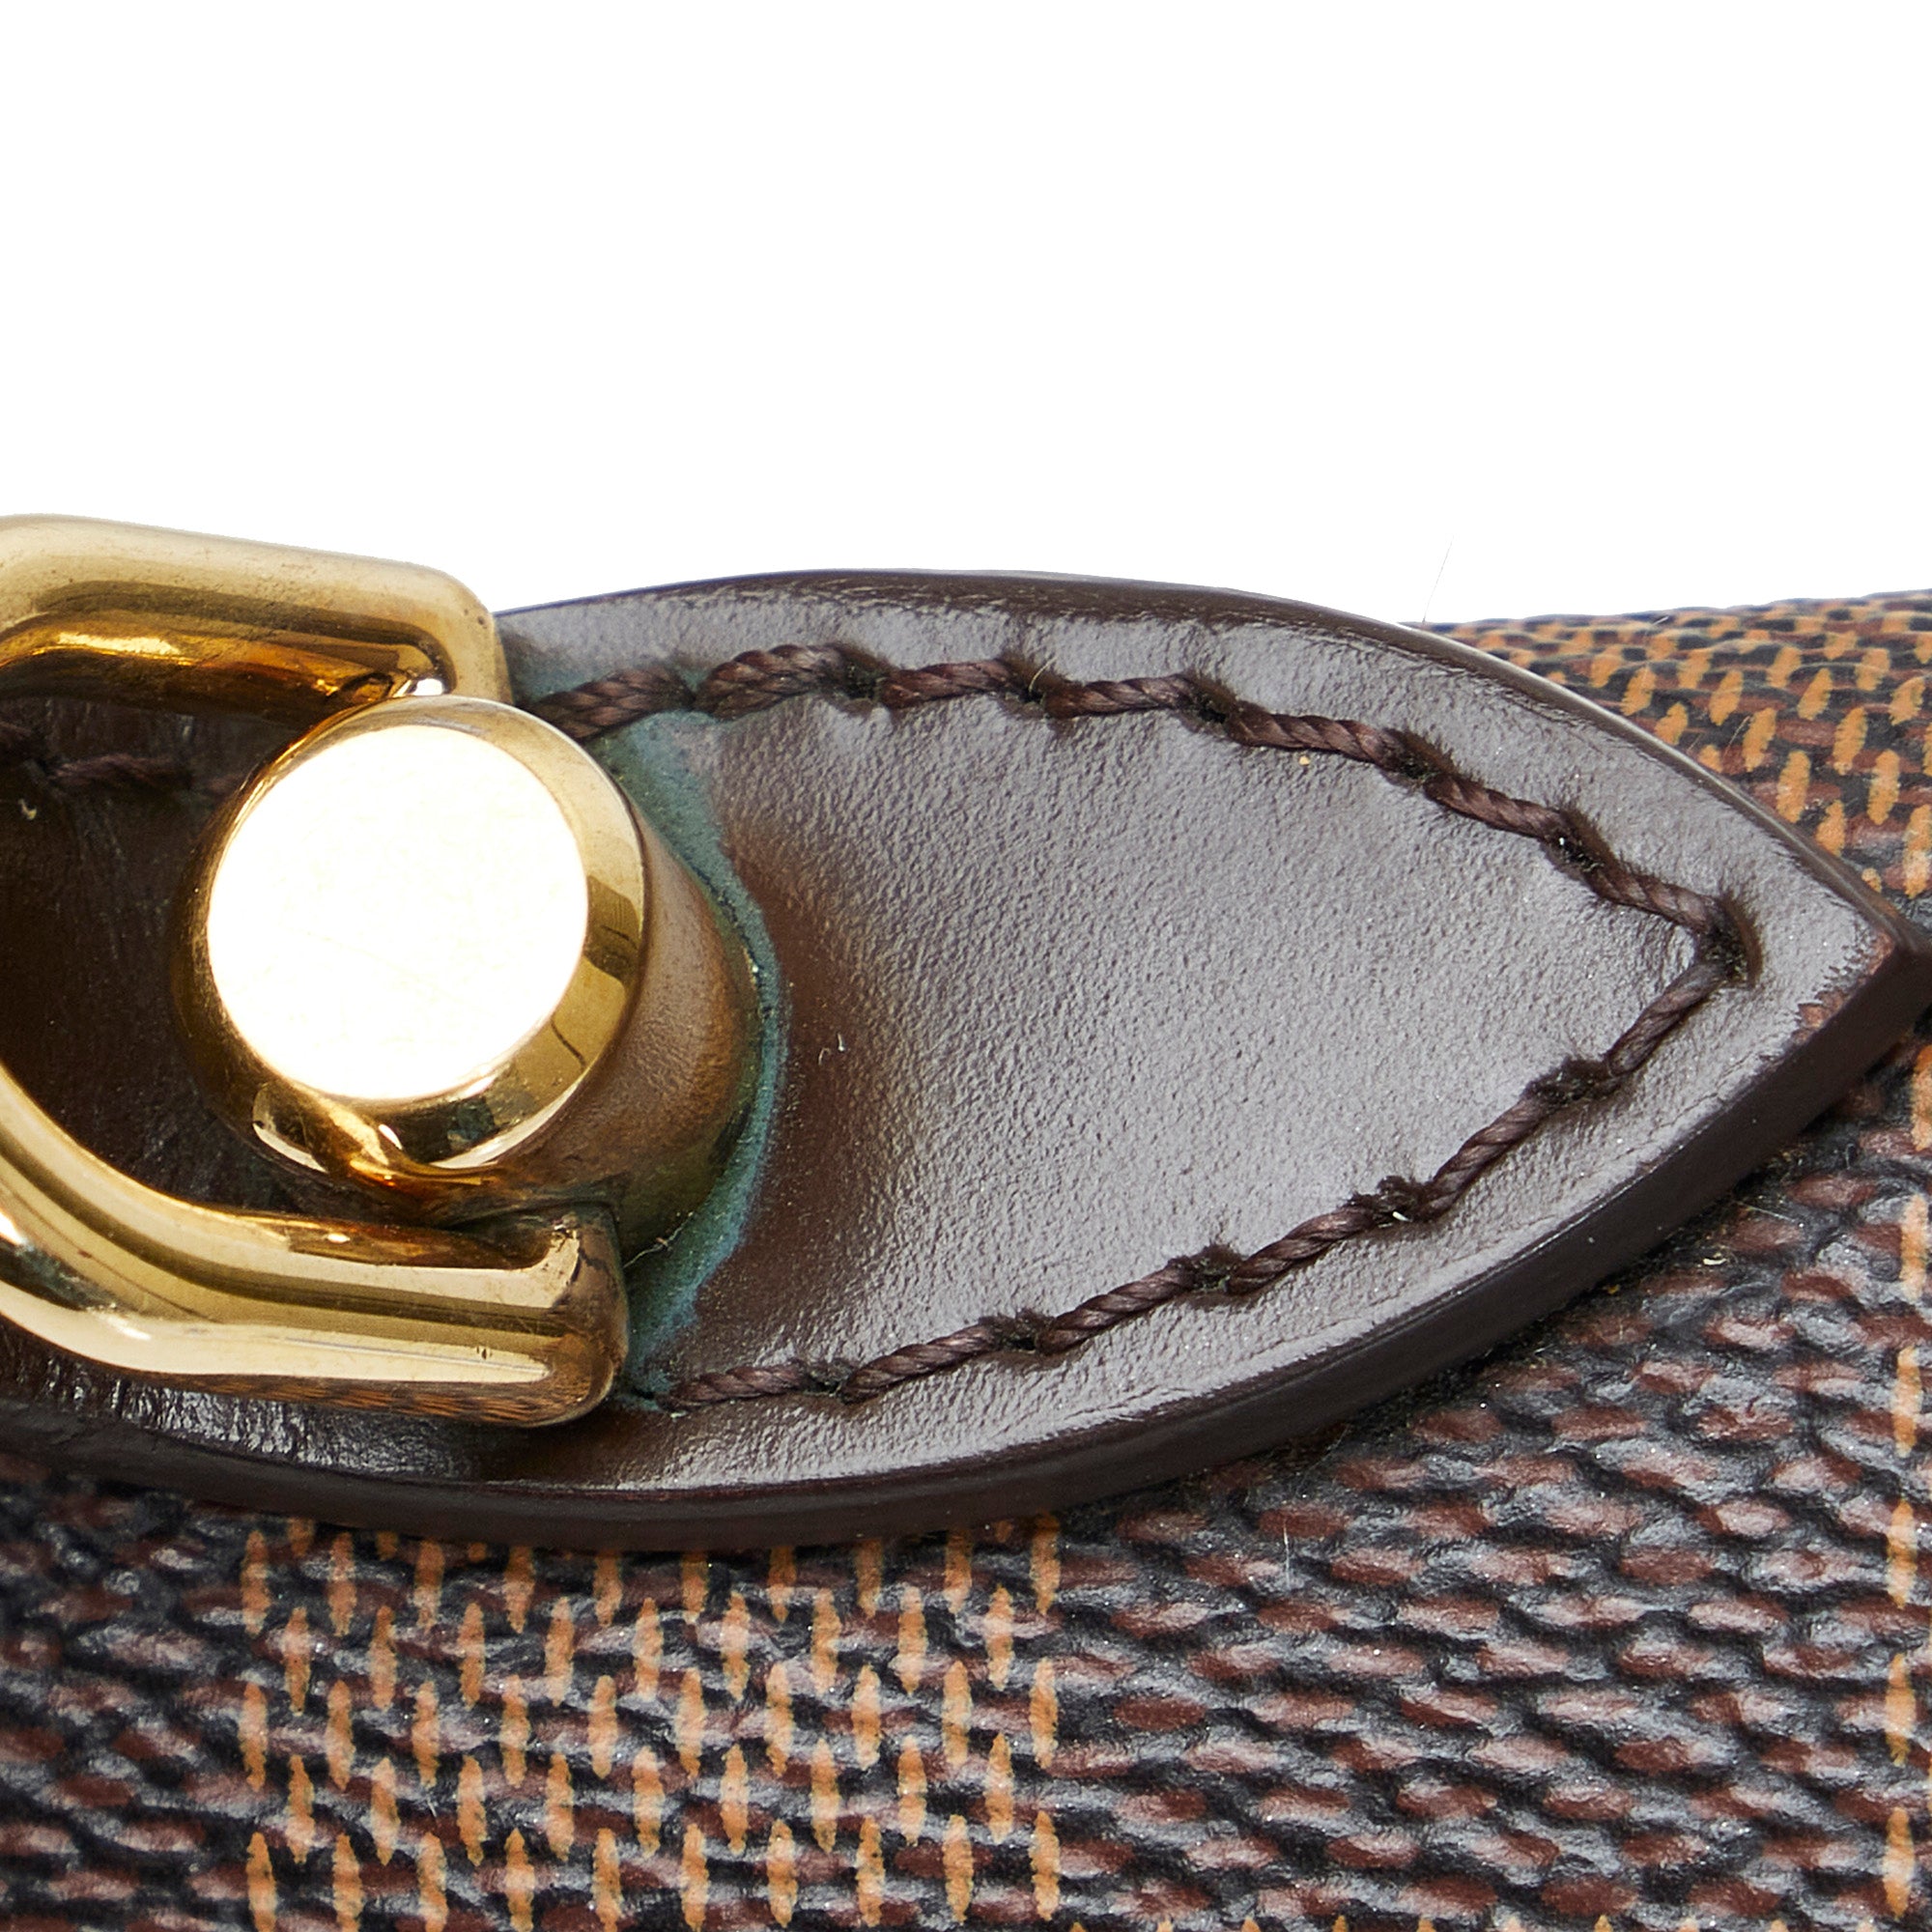 Louis Vuitton Bergamo Handbag 310758, Extension-fmedShops